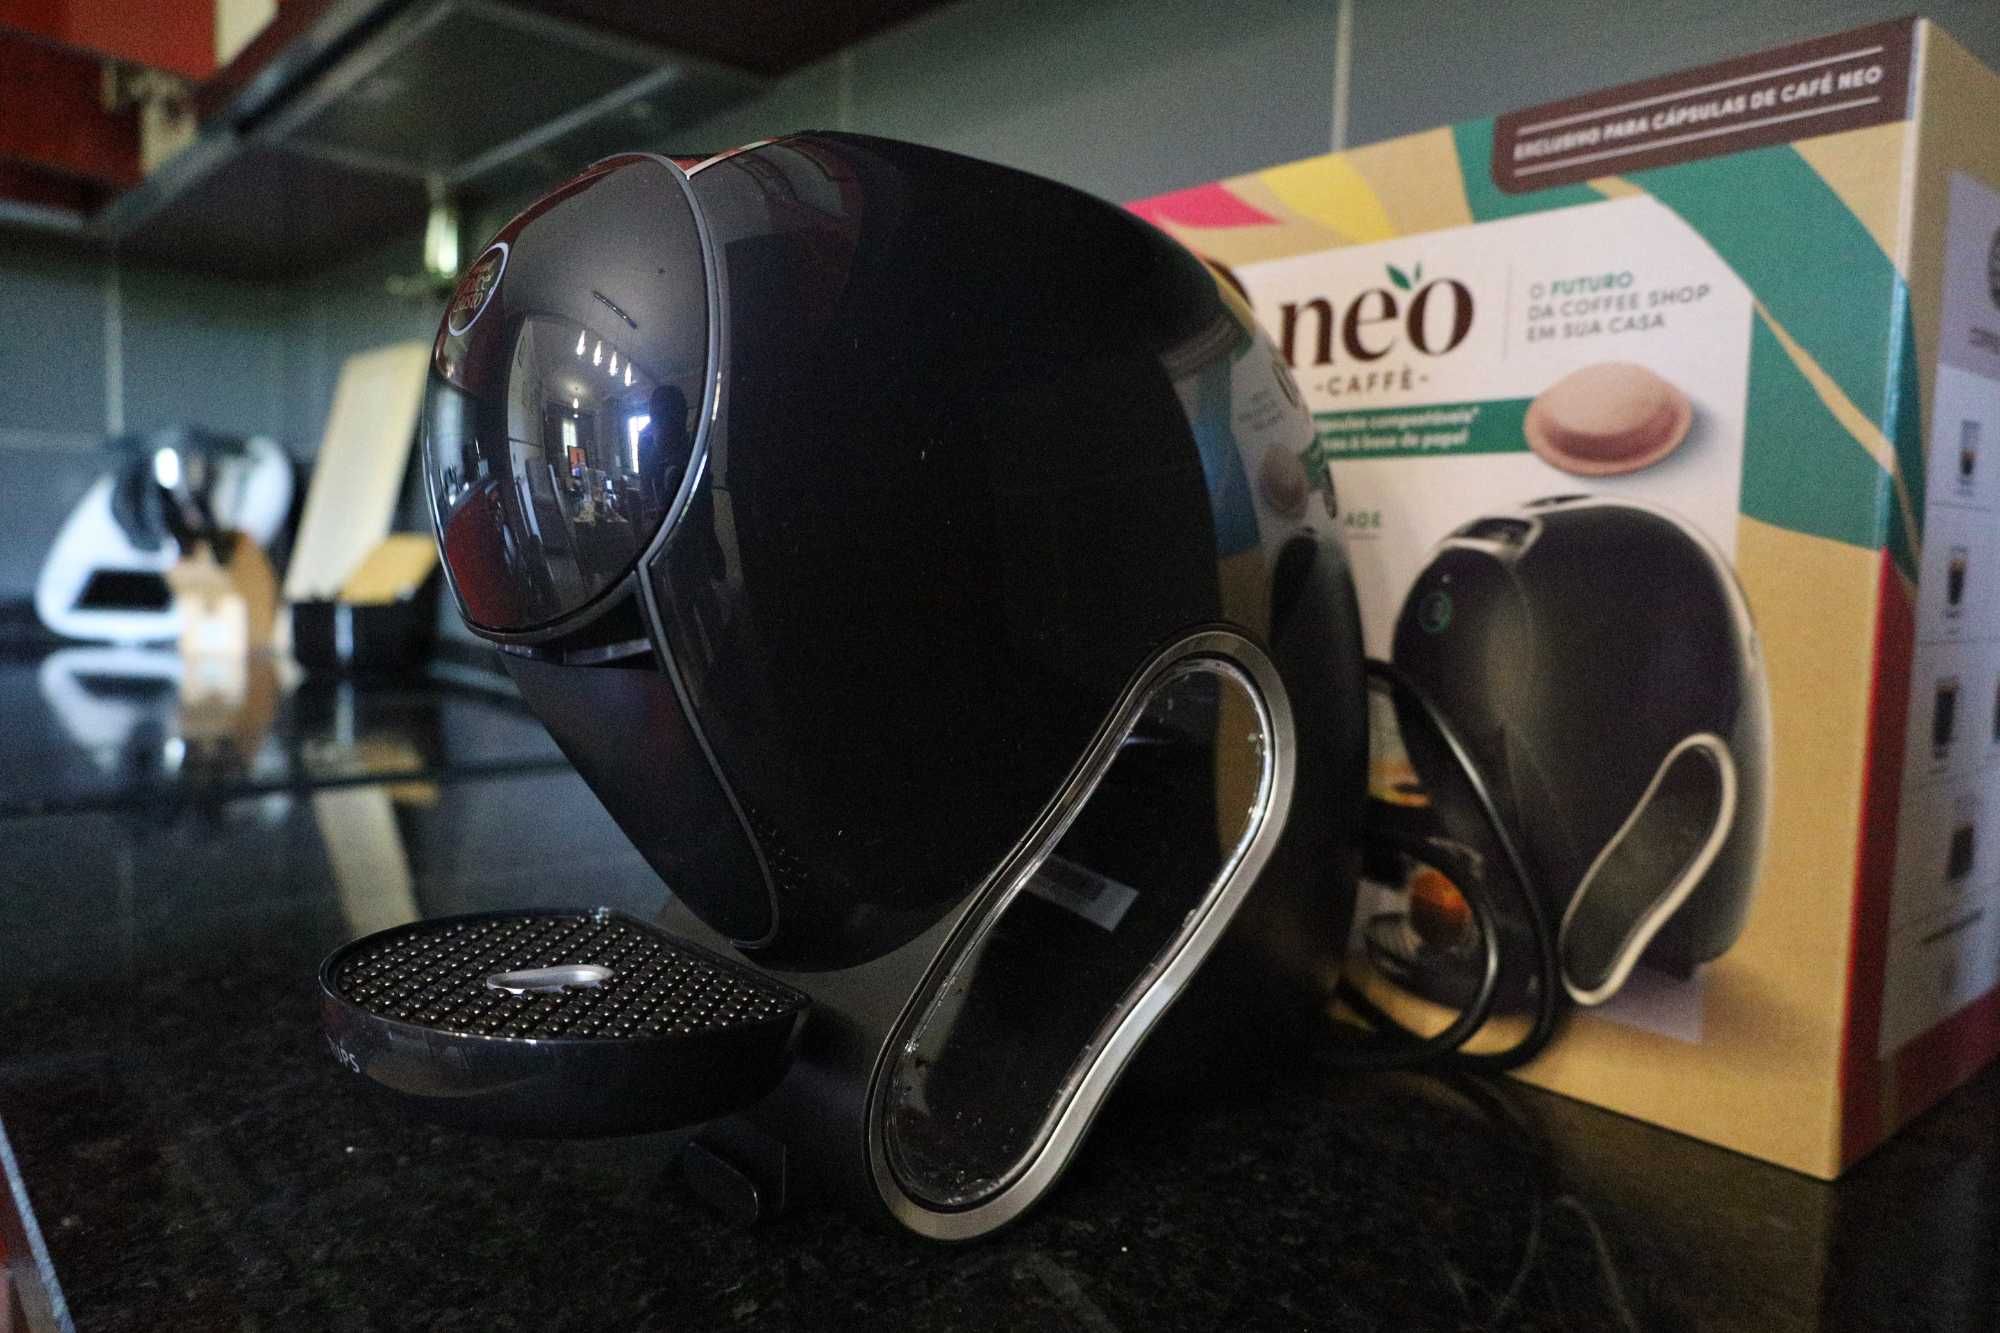 Máquina de Café Dolce Gusto Neo *Nova* + 4 Embalagens de Café